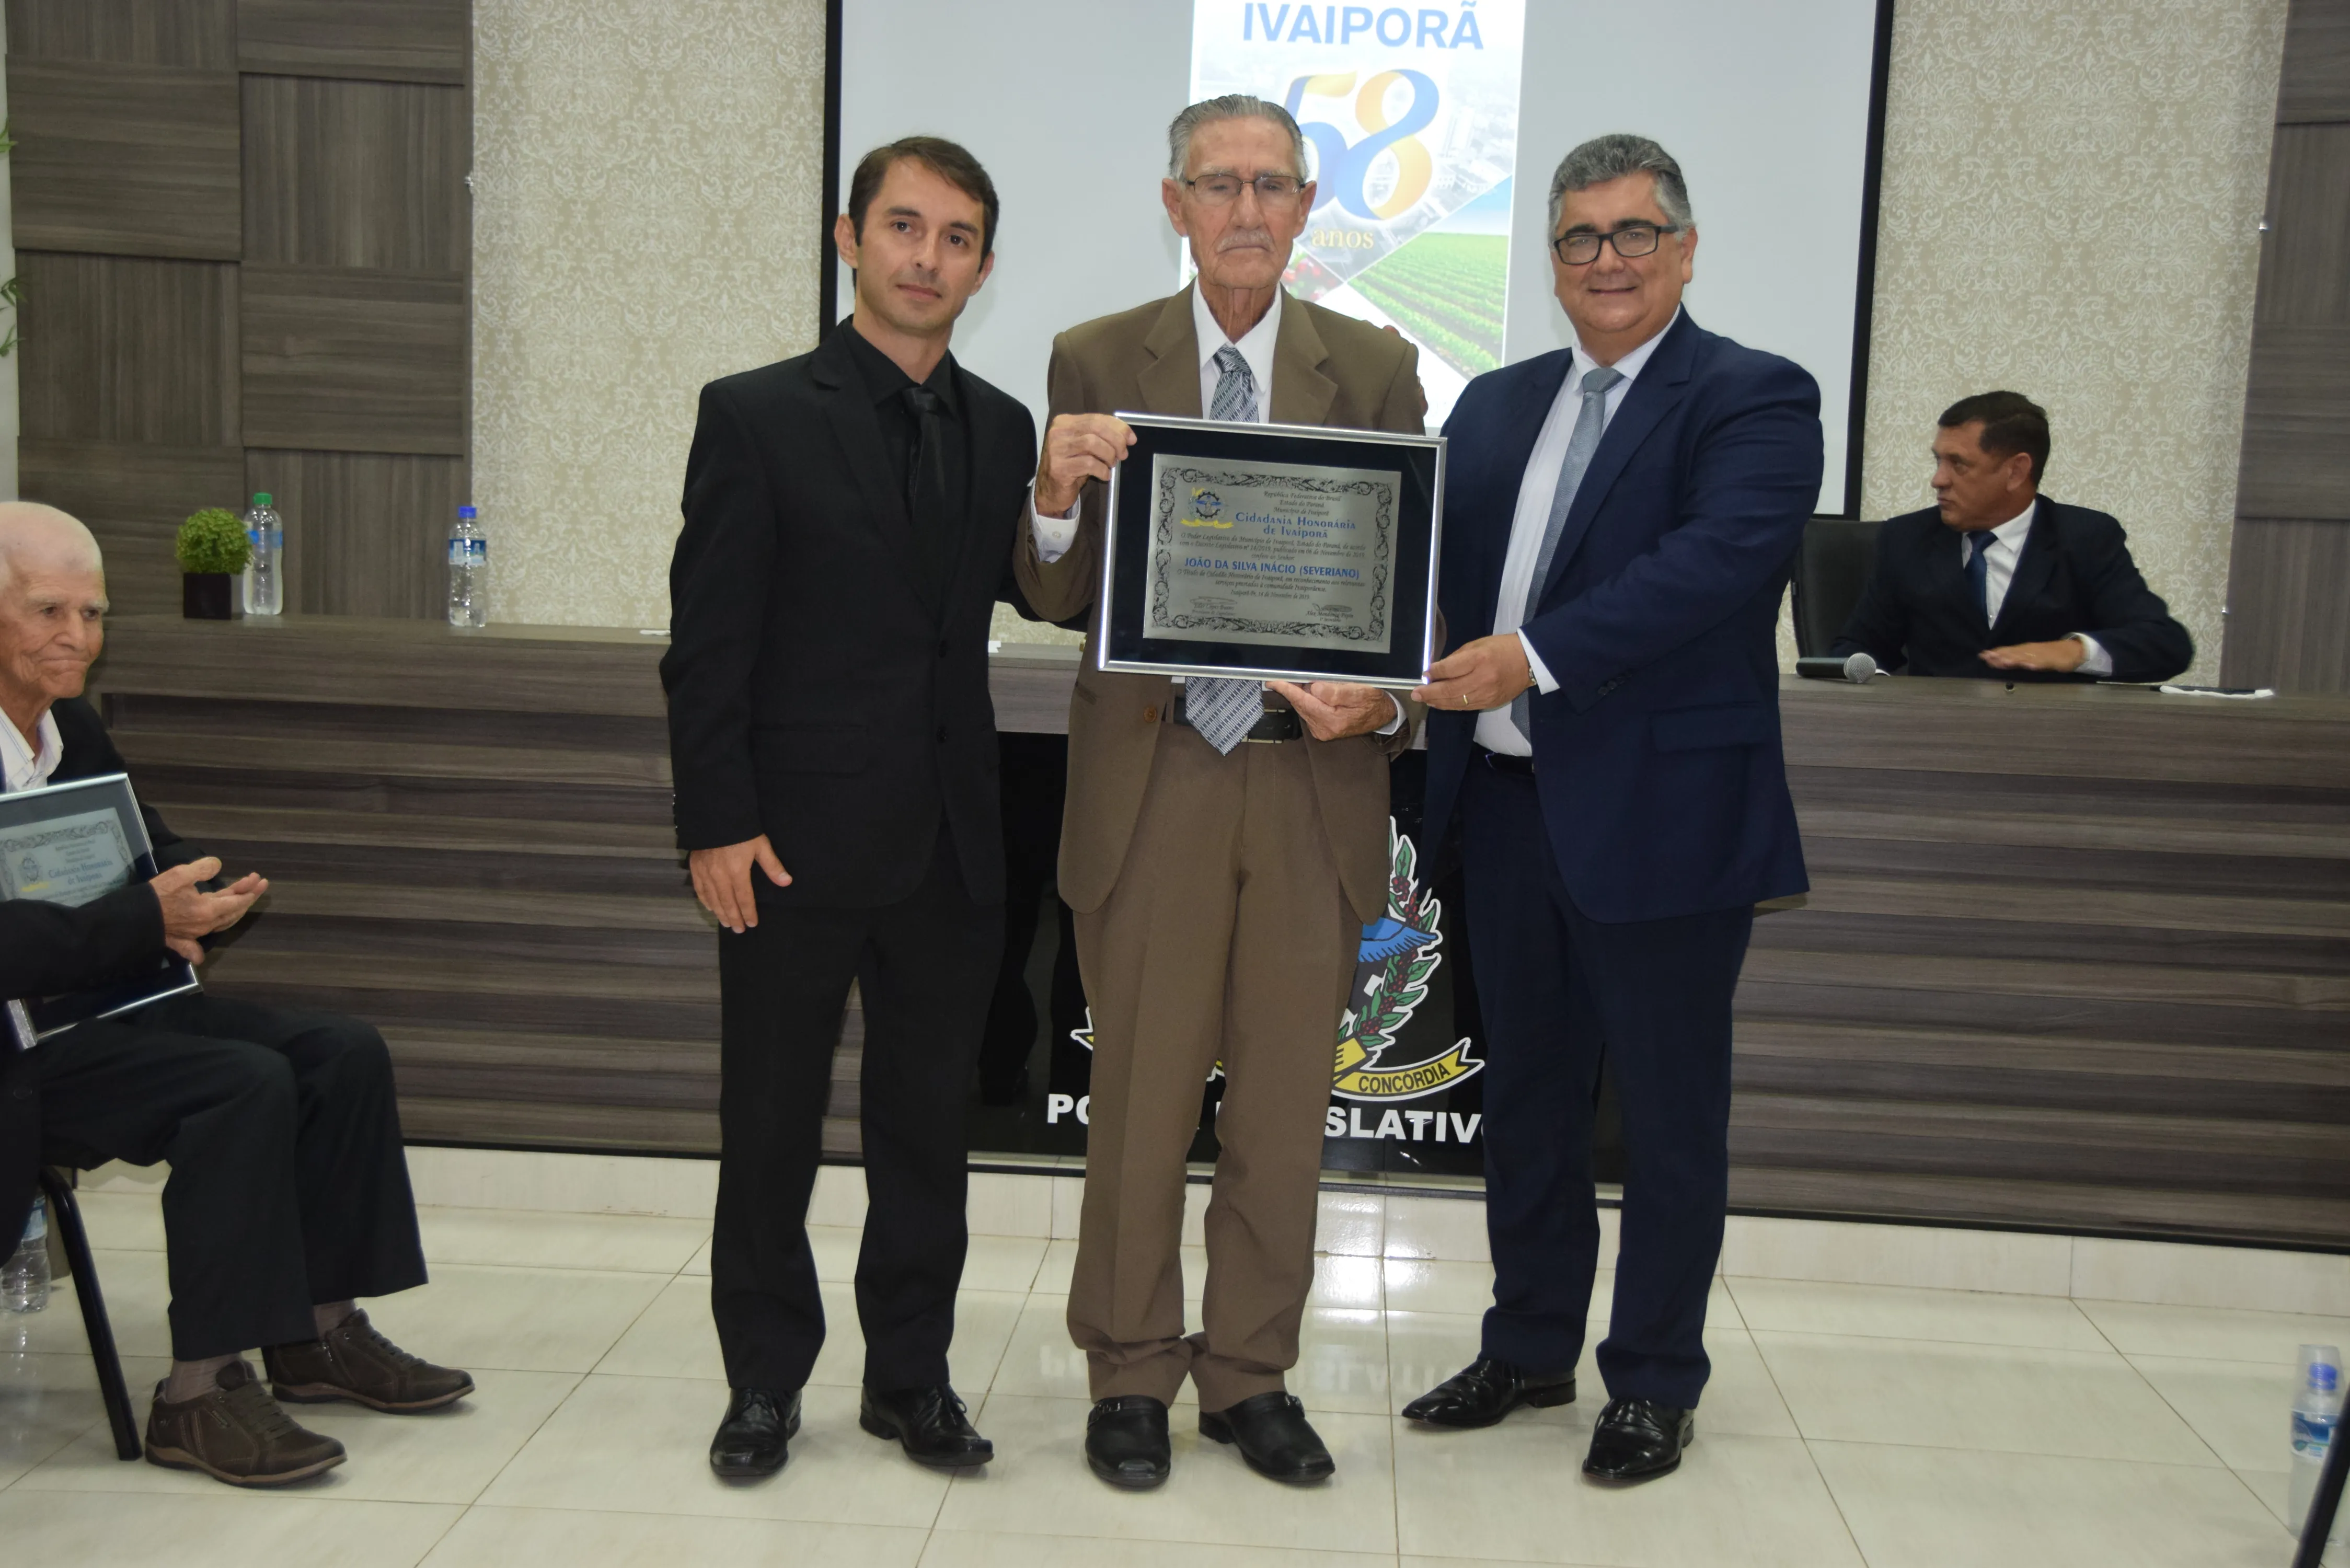 Câmara de Vereadores de Ivaiporã entrega títulos de cidadão honorário